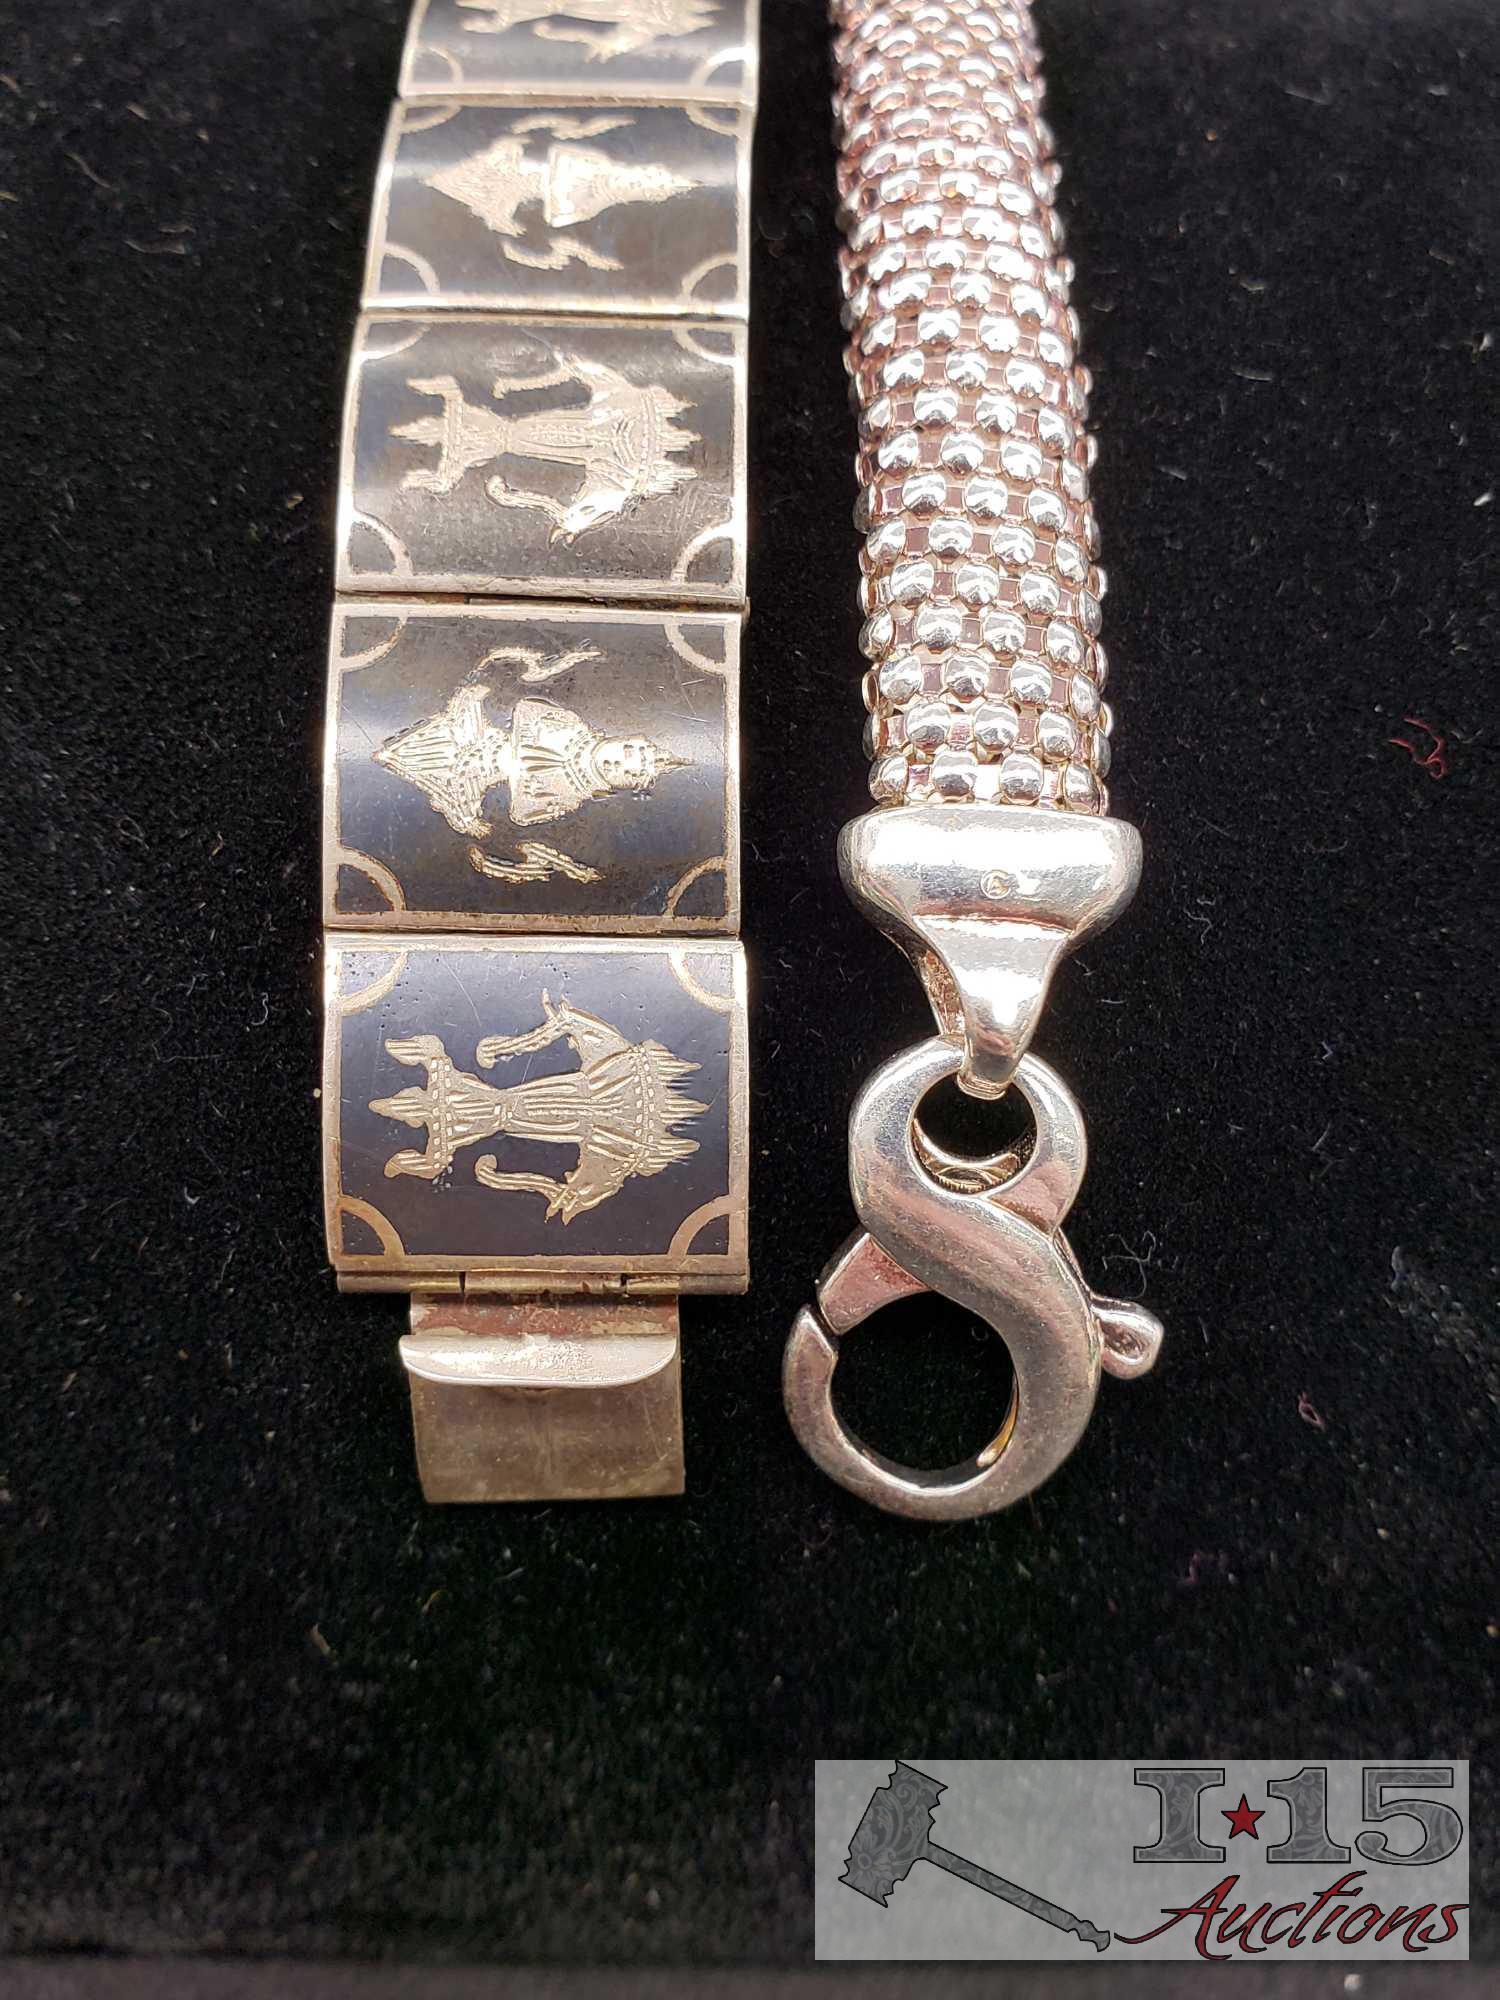 9 Sterling Silver Bracelets